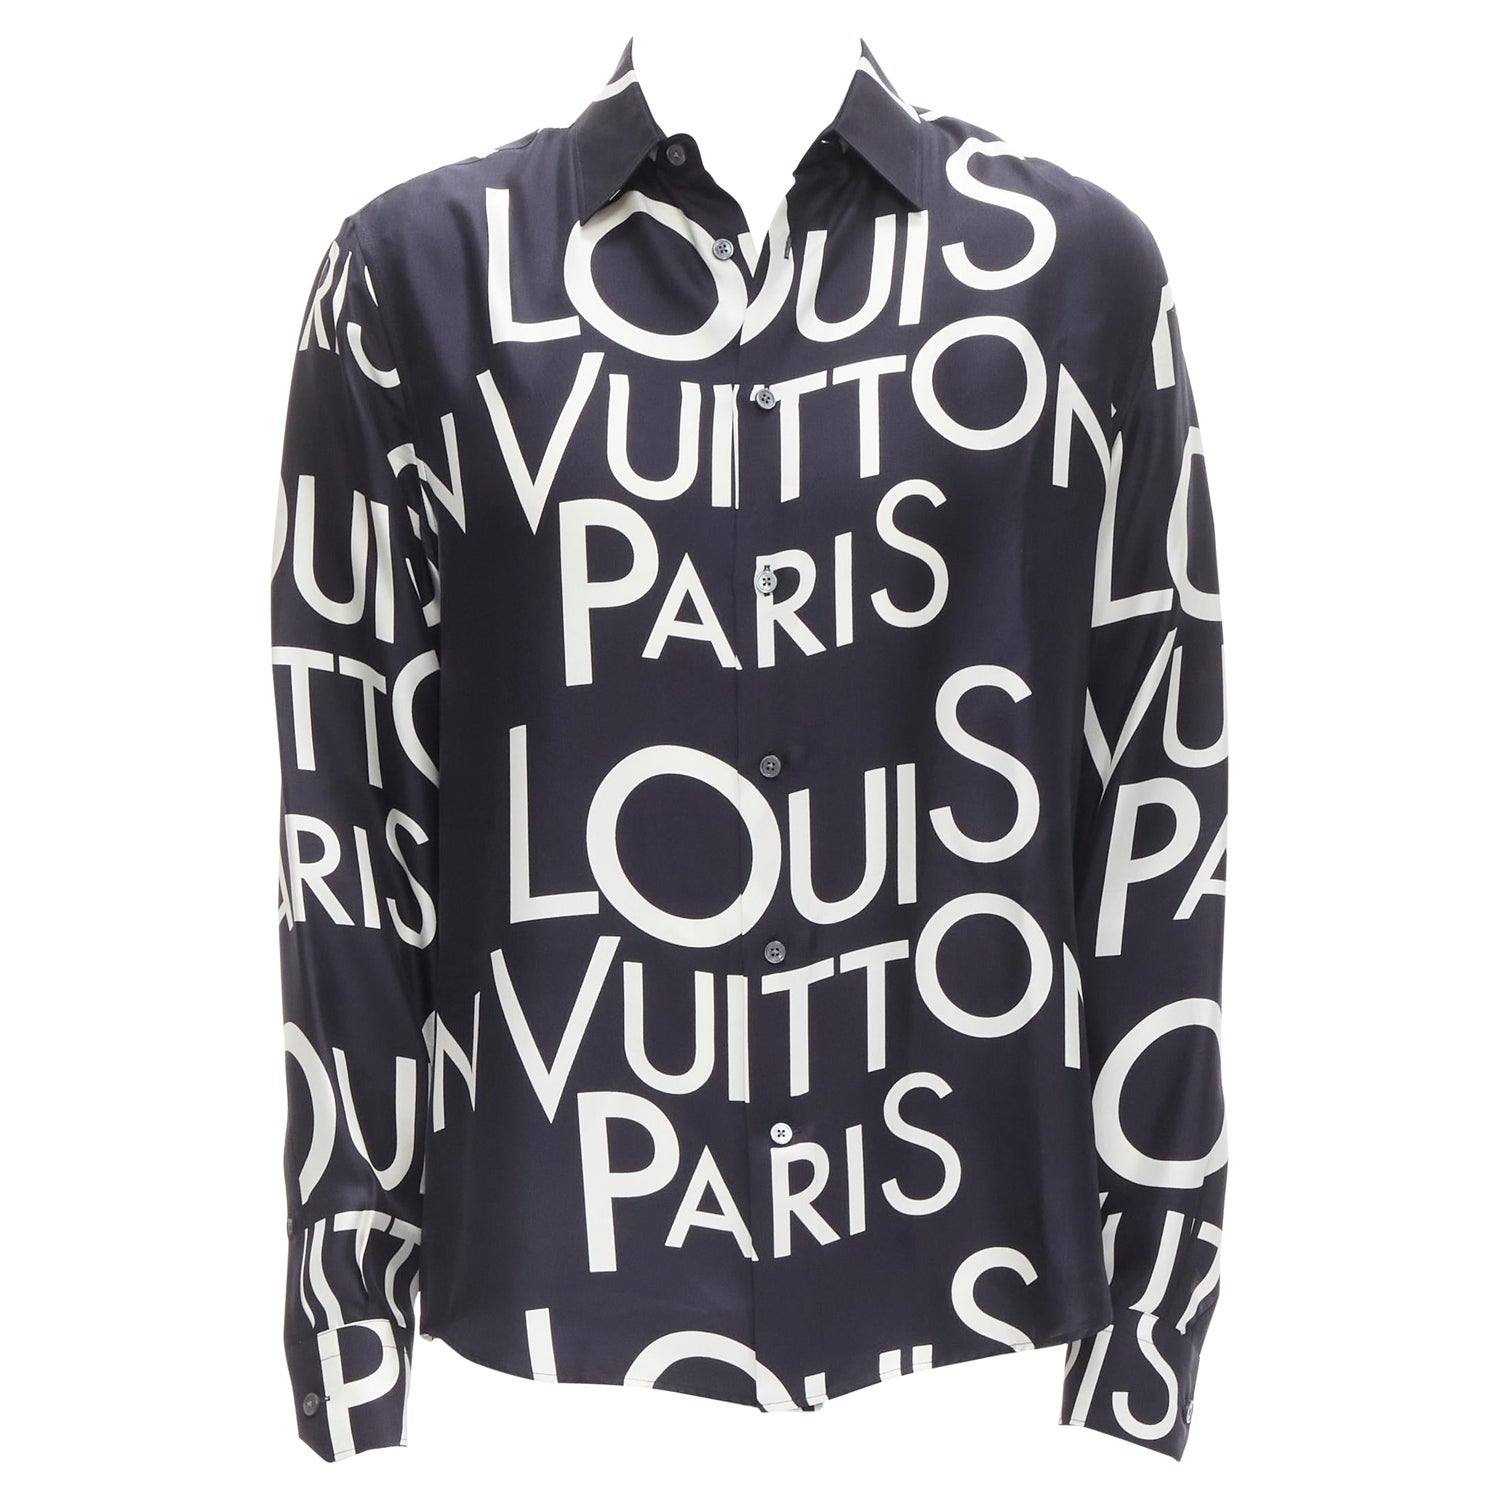 Louis Vuitton Vuitton Paris T-Shirt White. Size S0